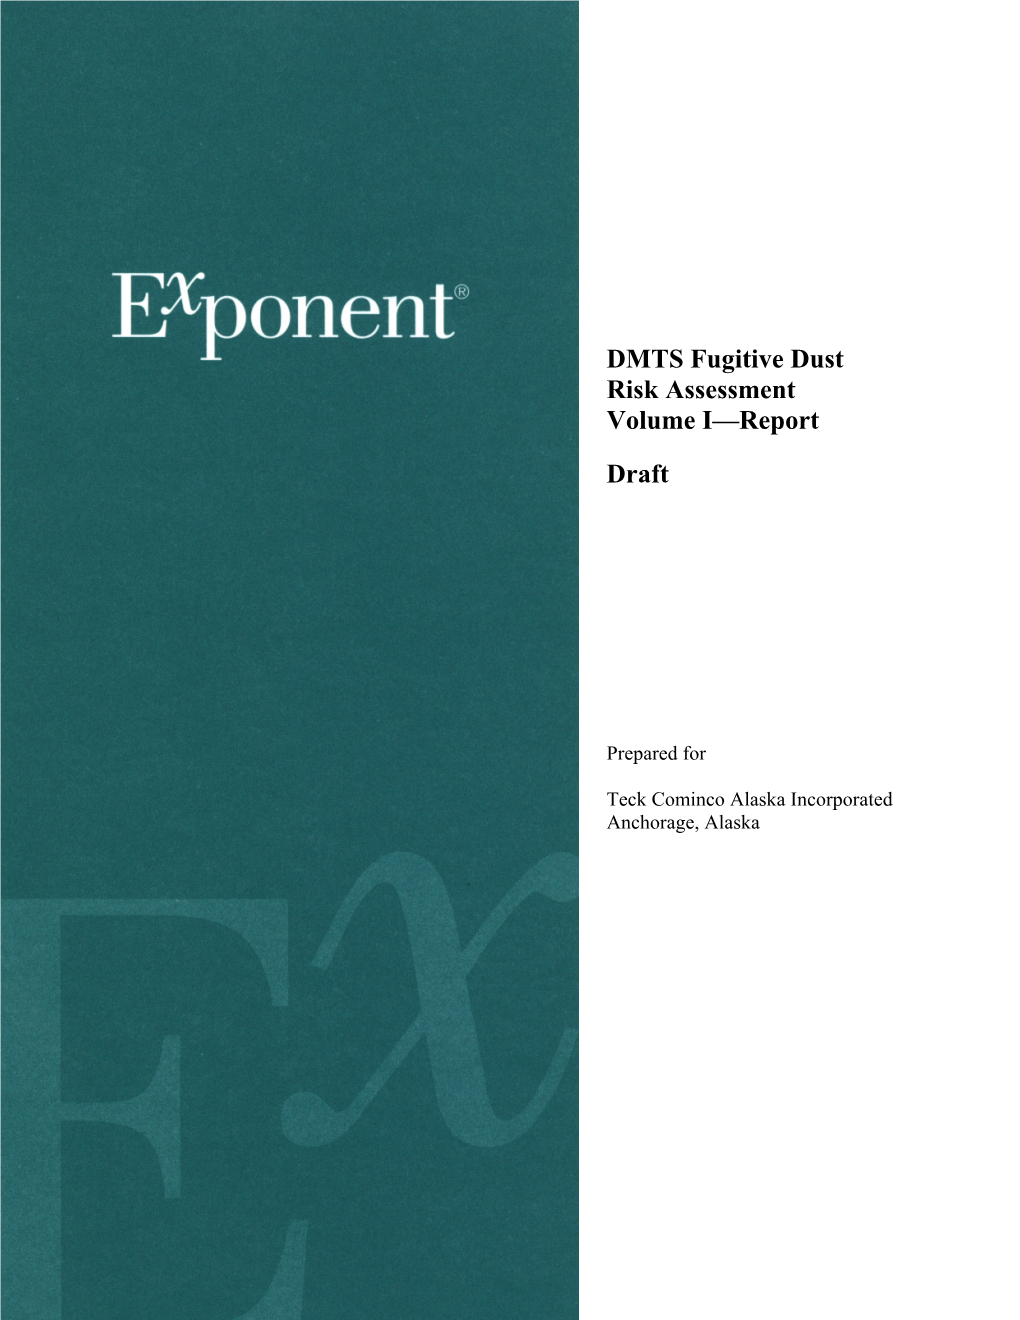 DMTS Fugitive Dust Risk Assessment Volume I—Report Draft